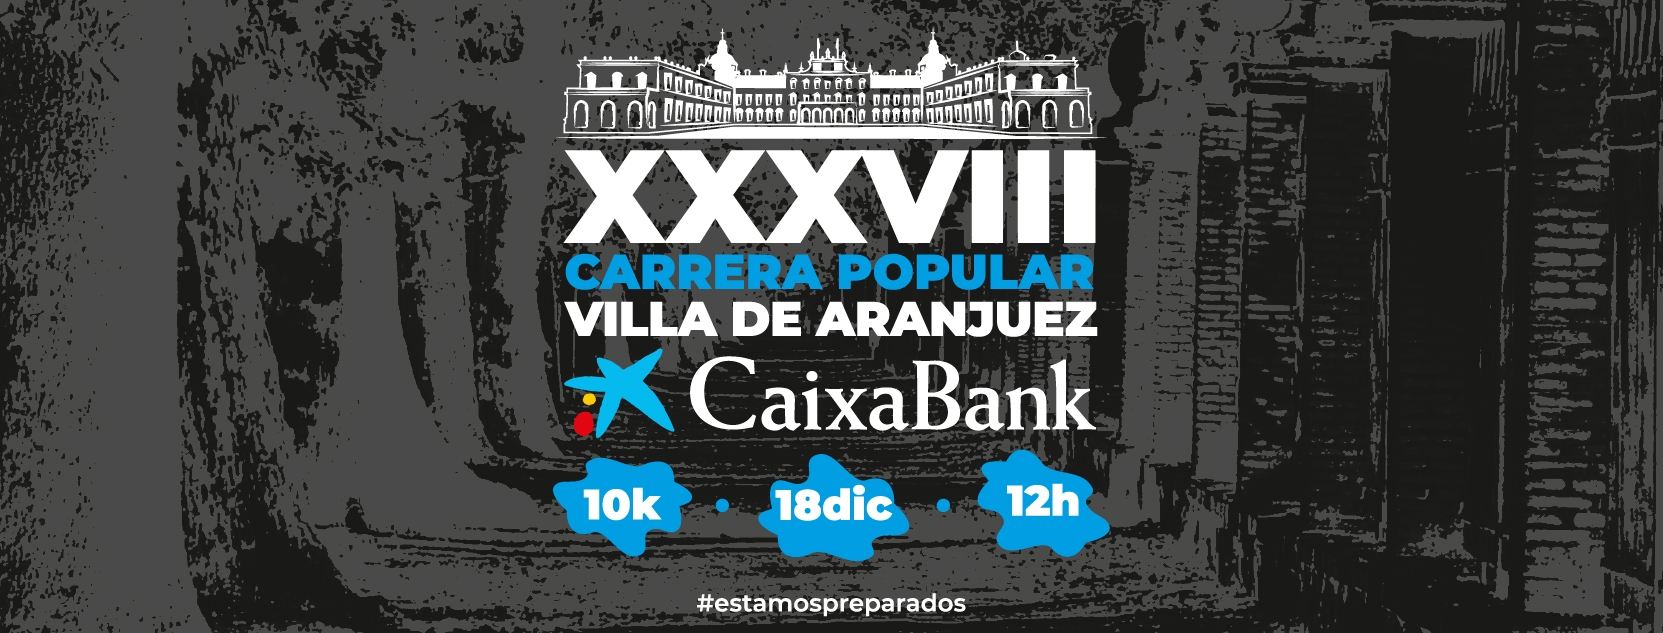 XXXVIII Carrera Popular Villa de Aranjuez Caixabank